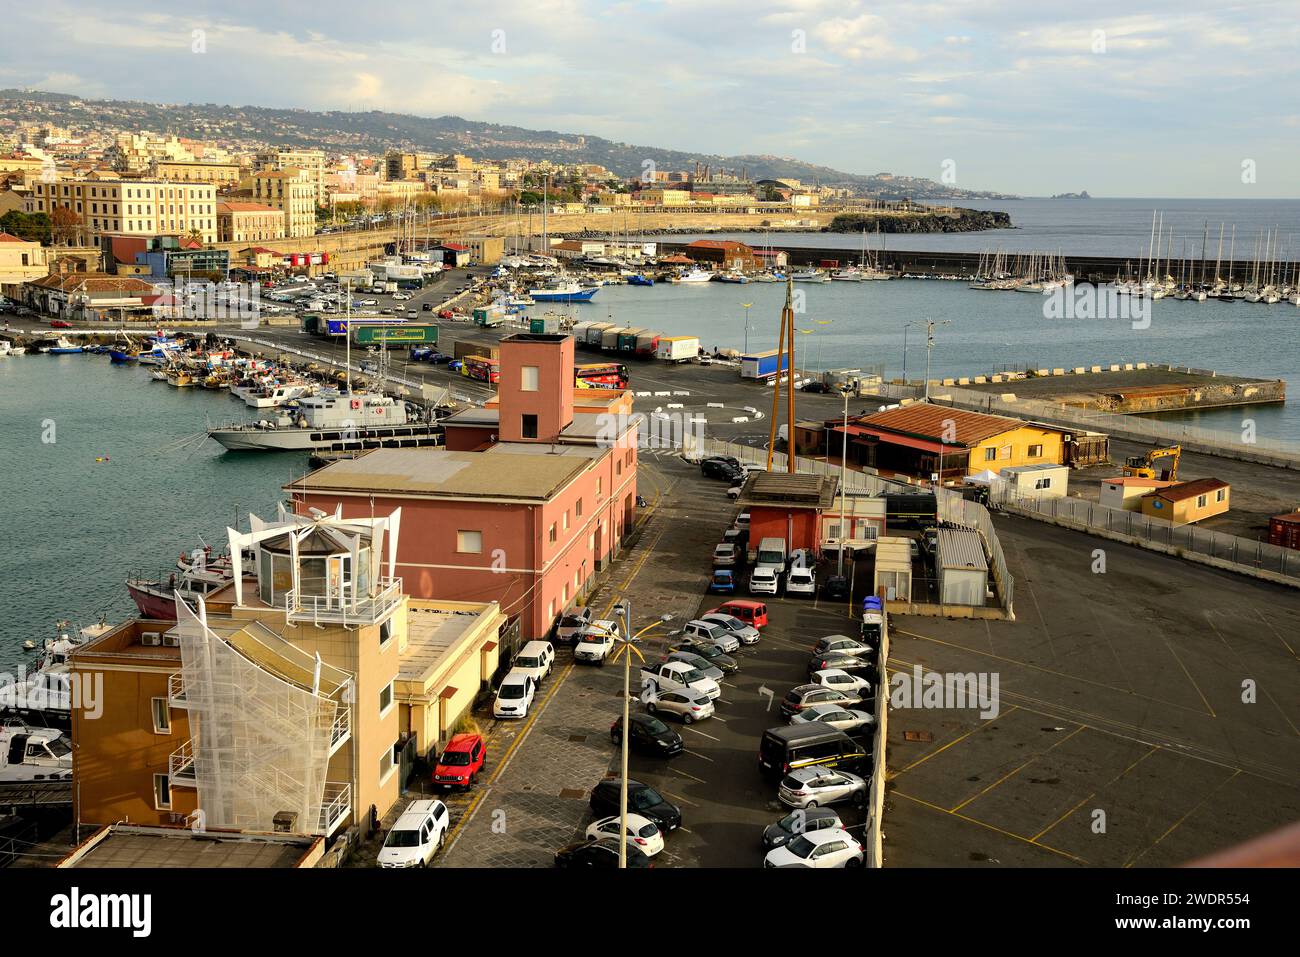 Catania, city, harbour, boats, Sicily, Mediterreanean Sea, Italy Stock Photo